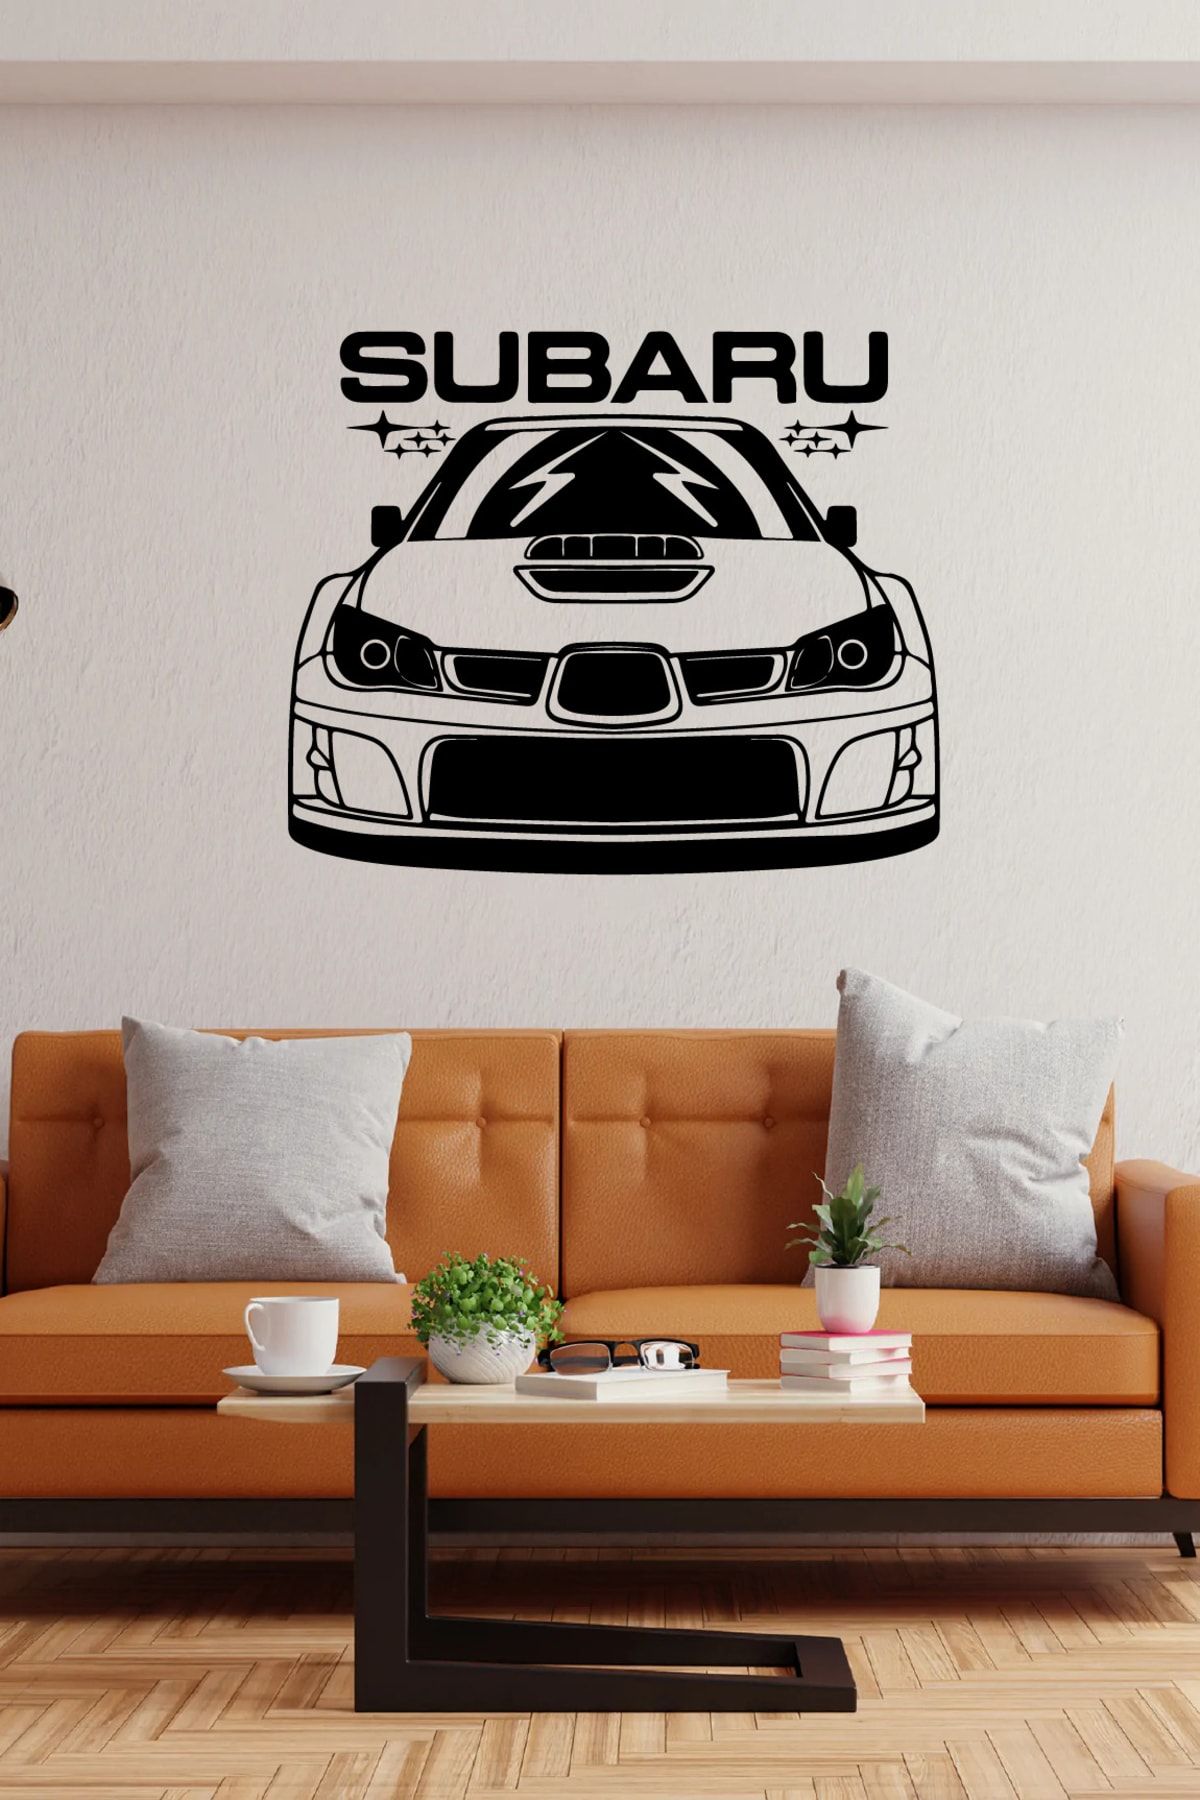 Genel Markalar Subaru Modifiyeli Araba Duvar Sticker Yapıştırma (SUDAN VE NEMDEN ETKİLENMEZ)